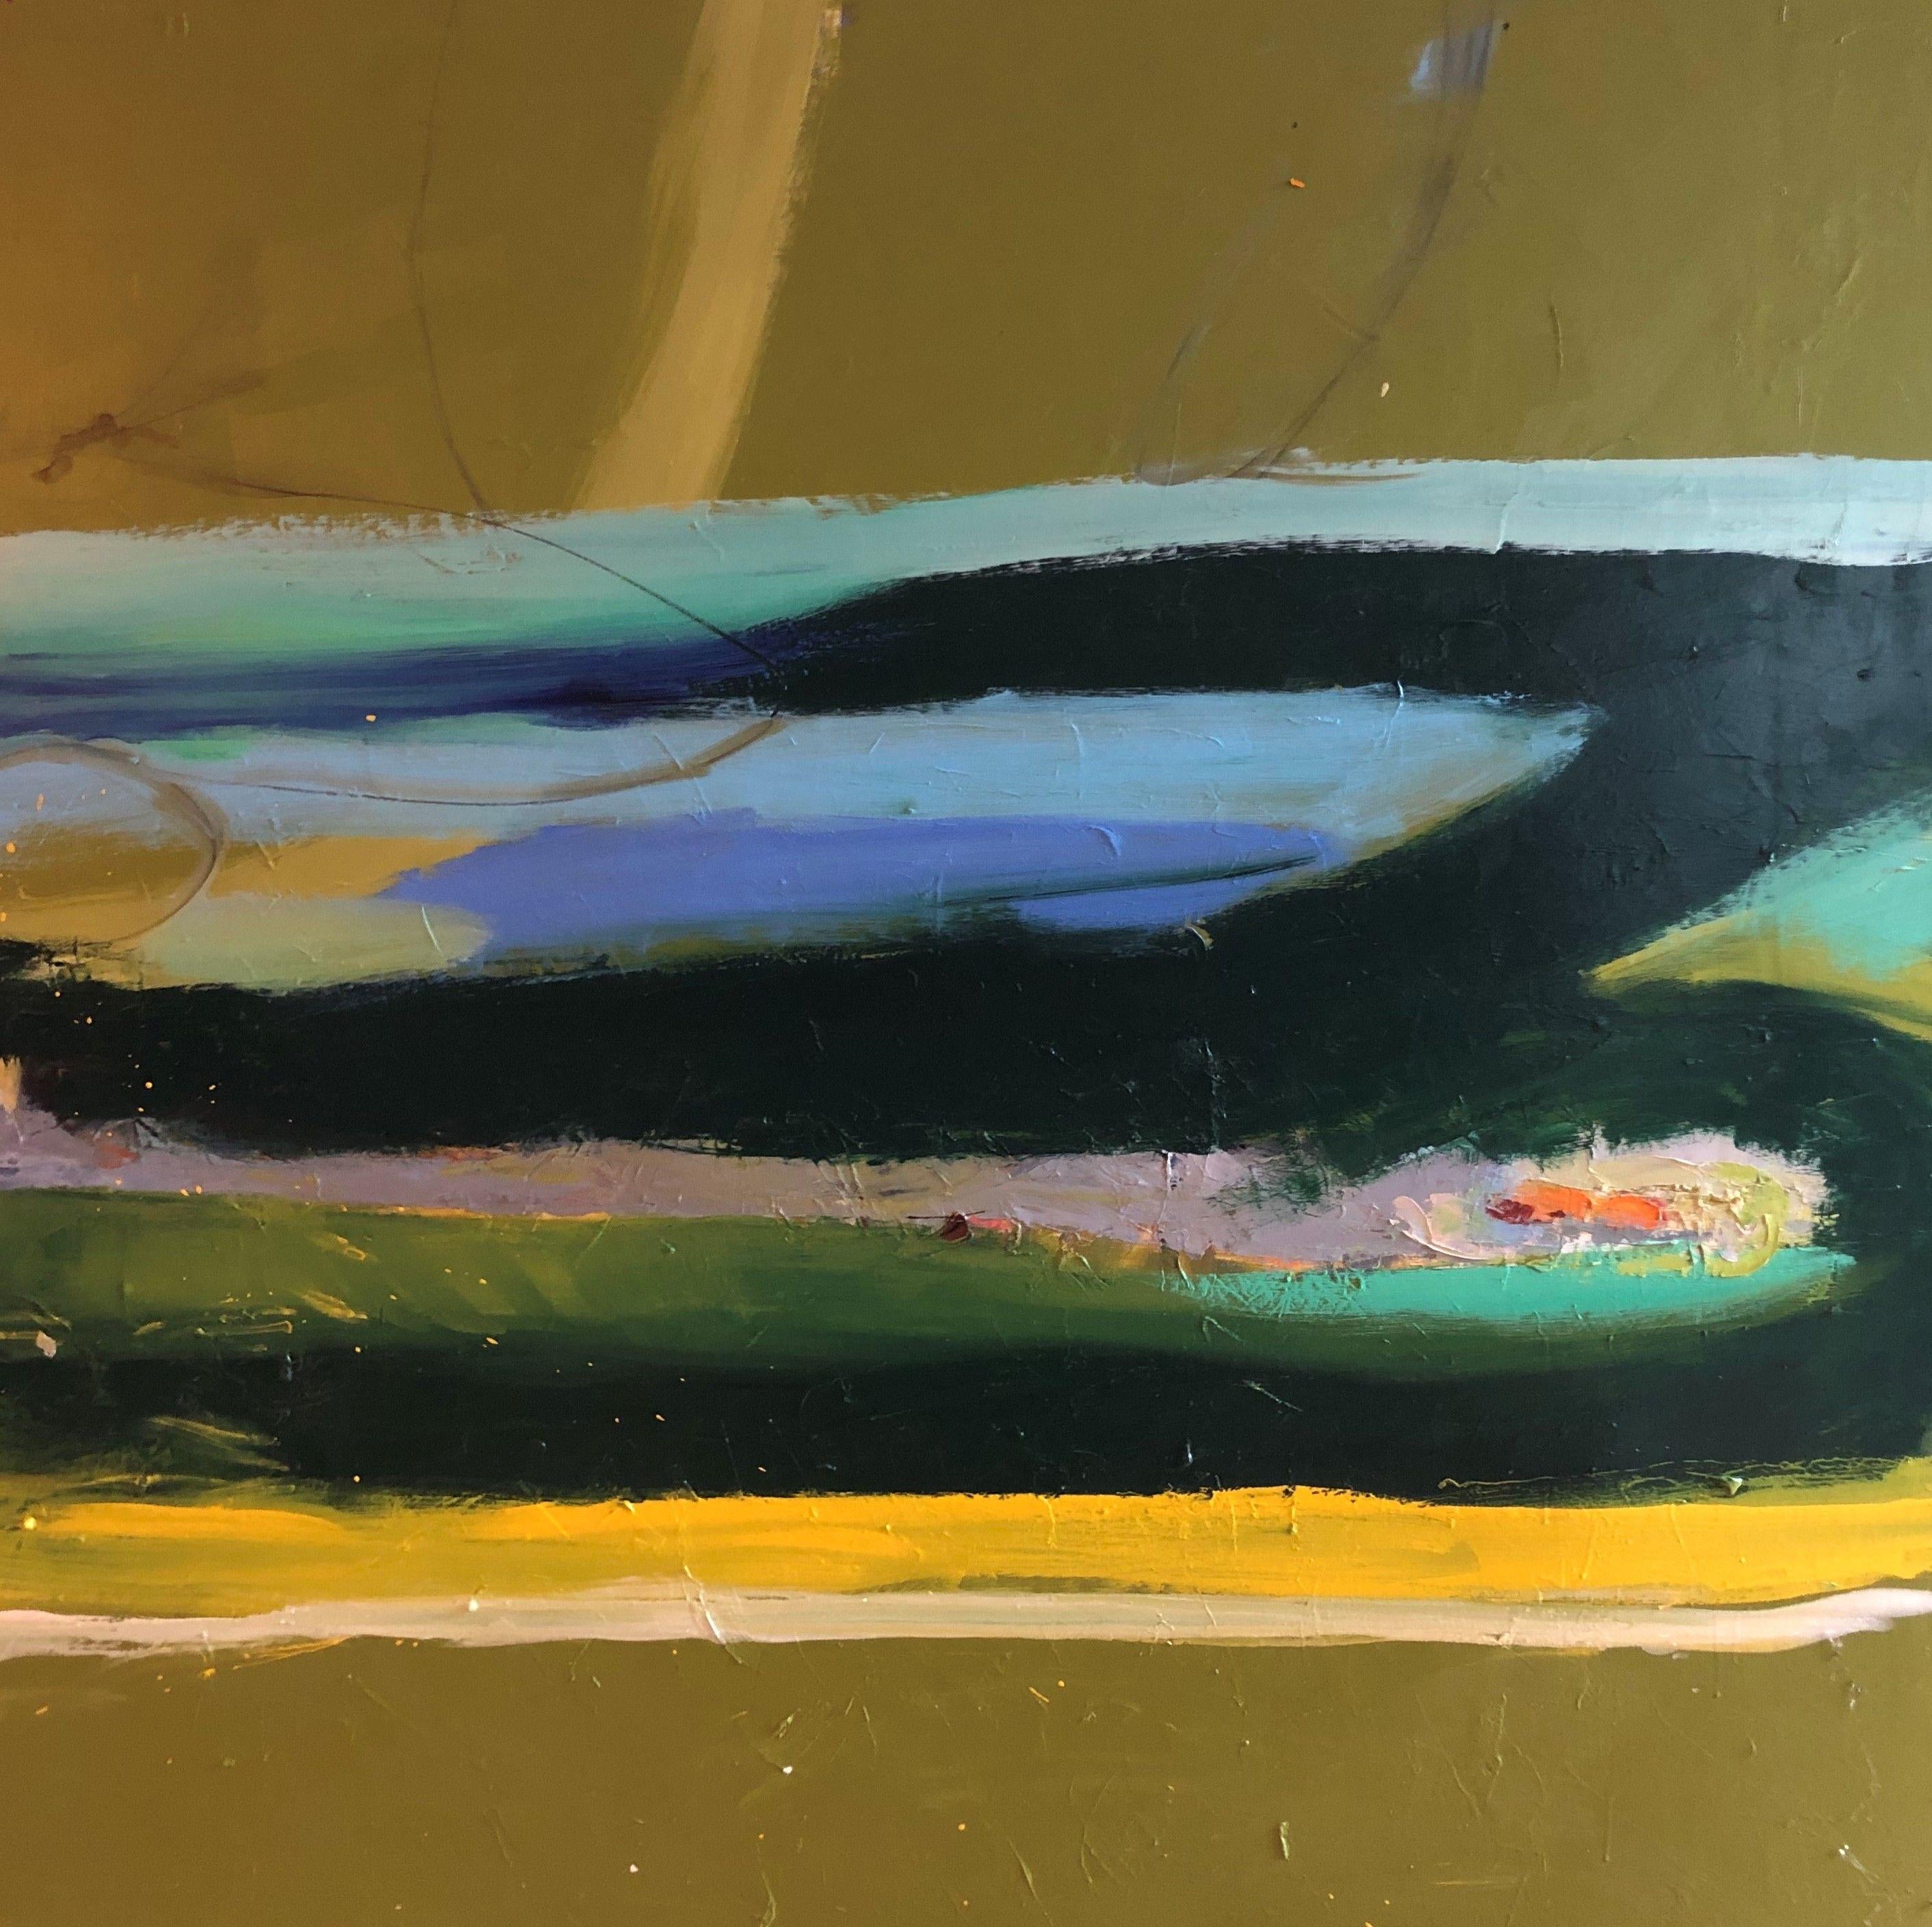 Abstract Painting Rebecca Klementovich - Sauterelles et lucioles du lac, peinture, huile sur toile